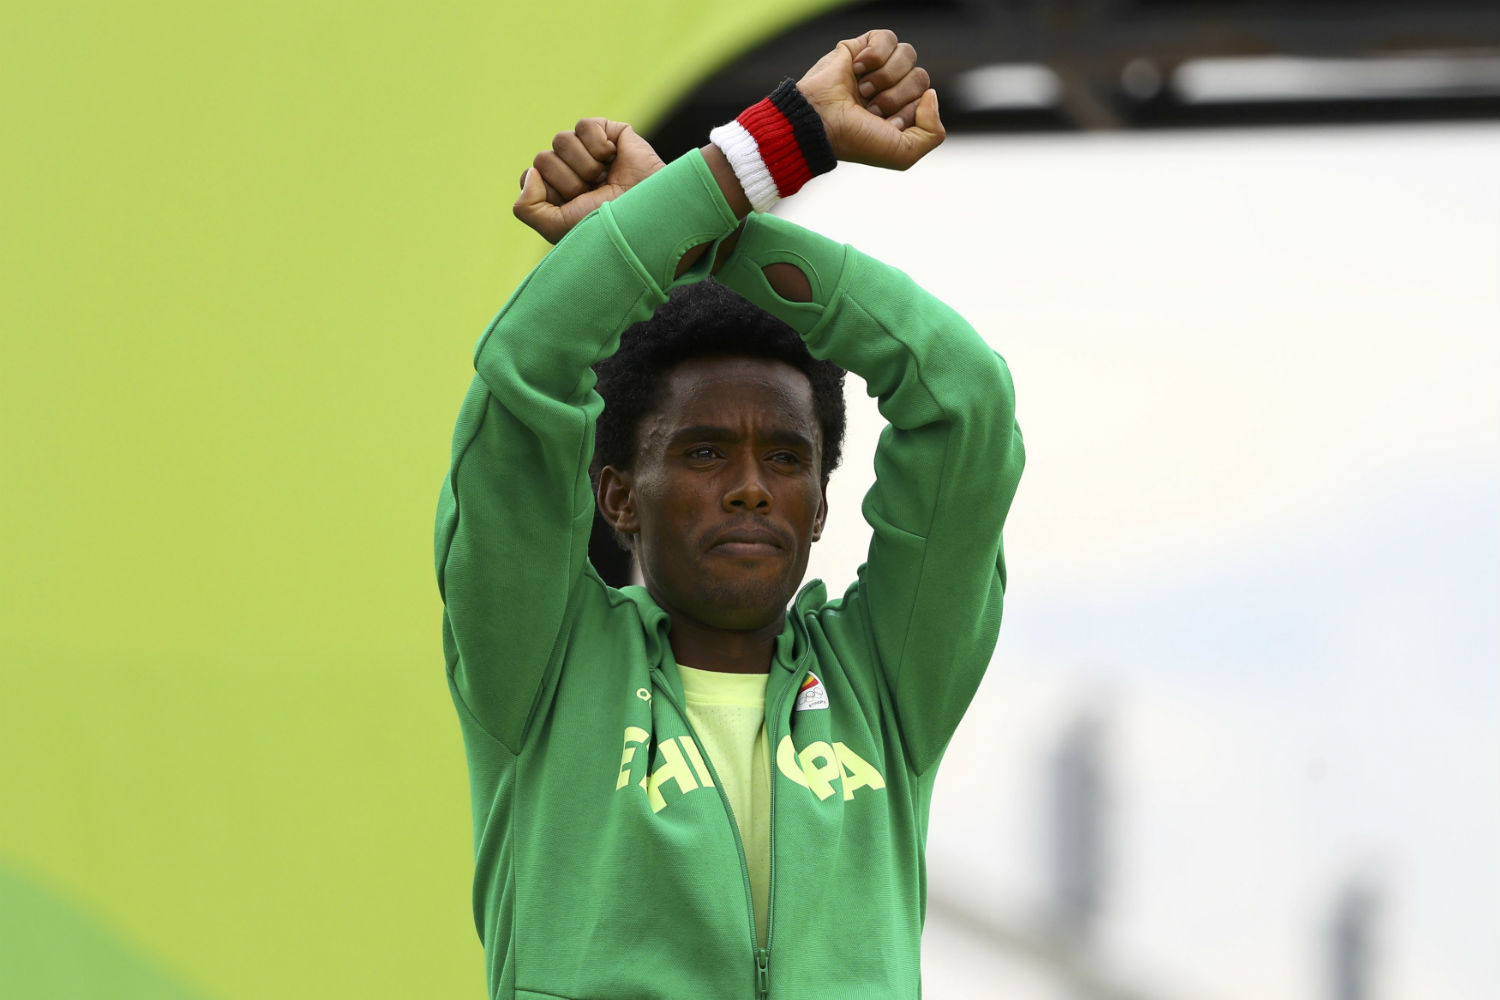 Un etíope pone en riesgo su vida y denuncia la represión en su país tras ganar la plata en Río